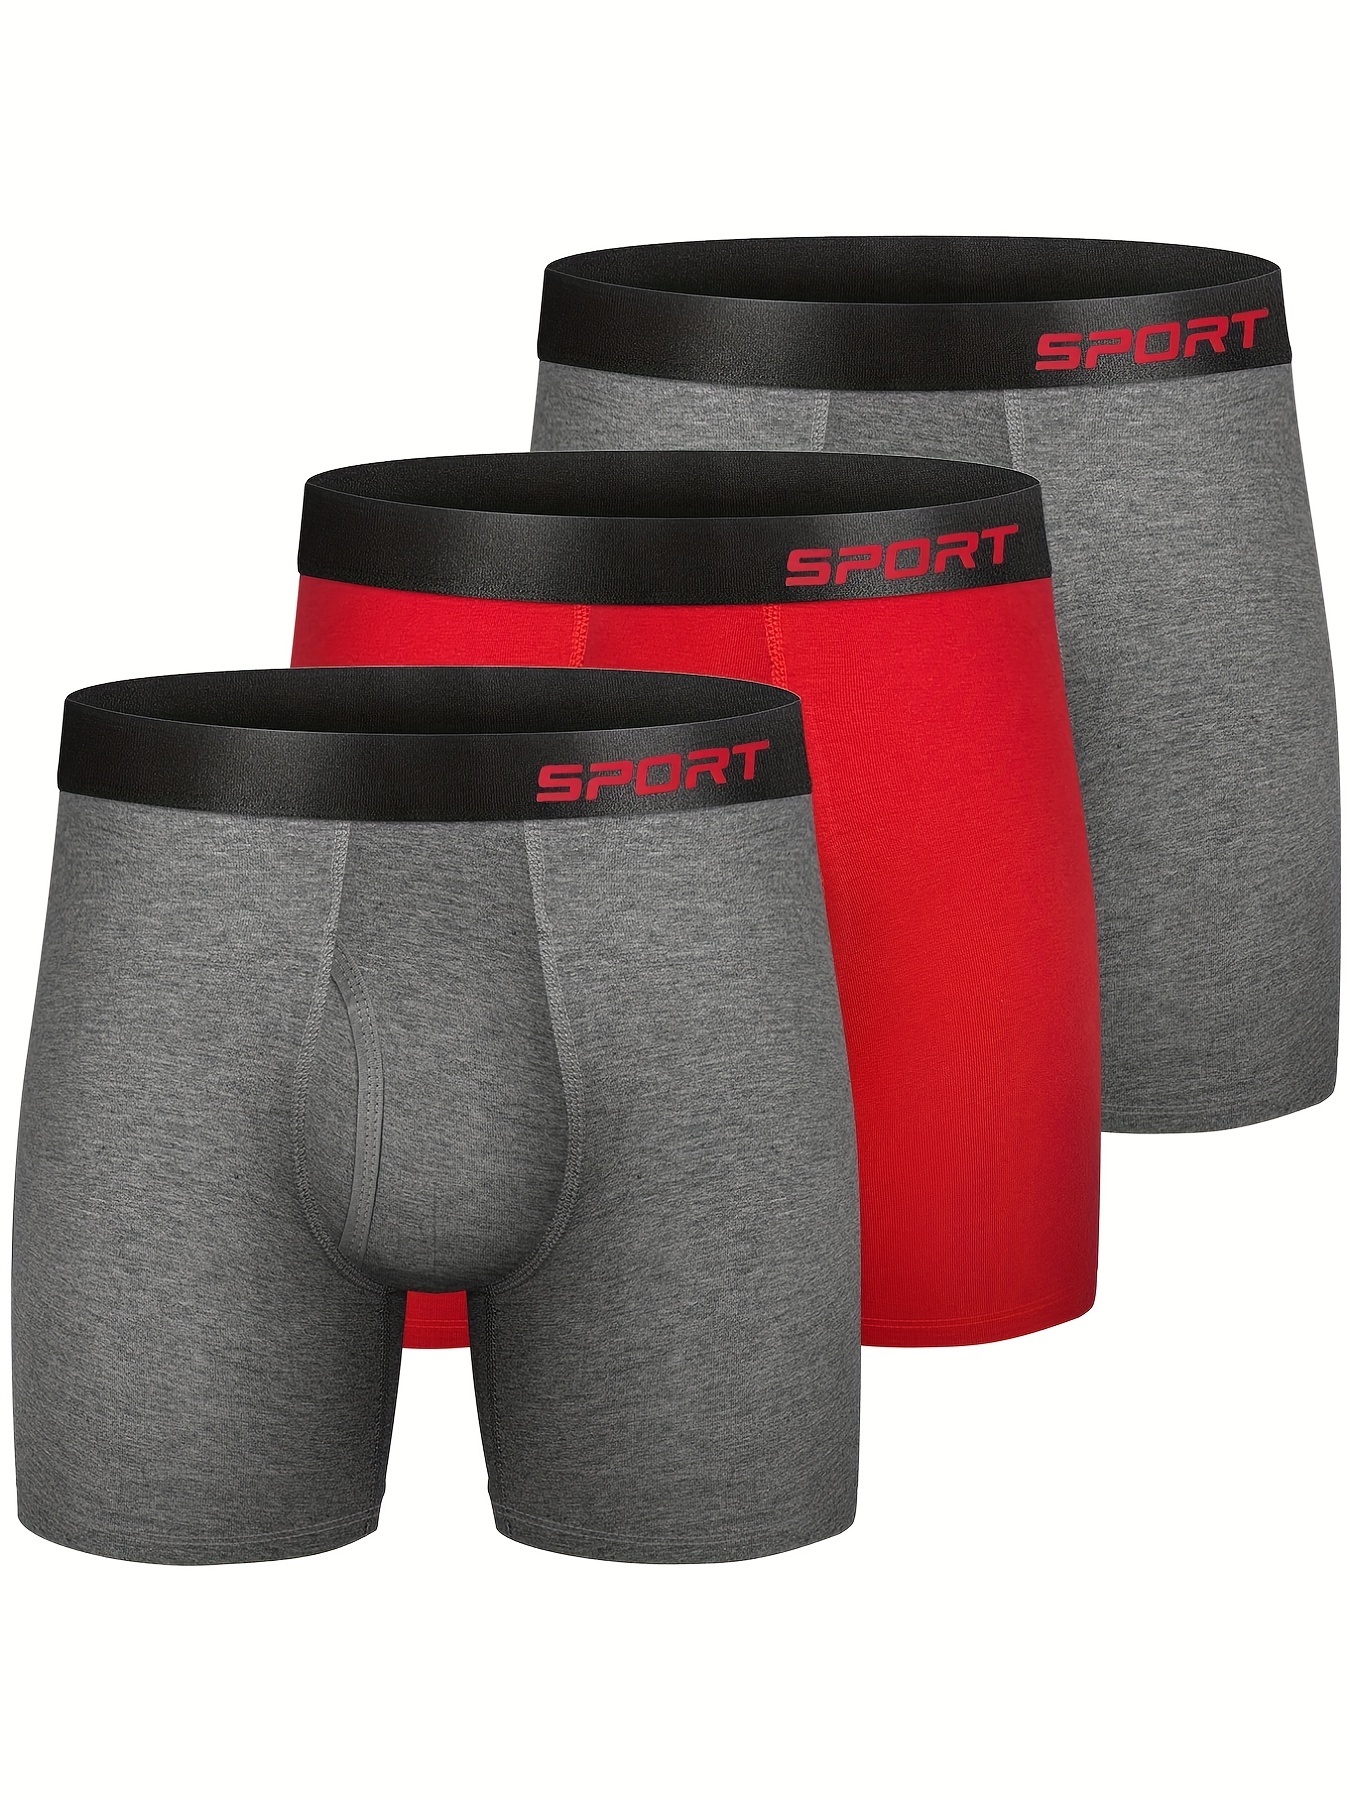 Buy Men's Cotton Stretch & Performance Boxer Briefs